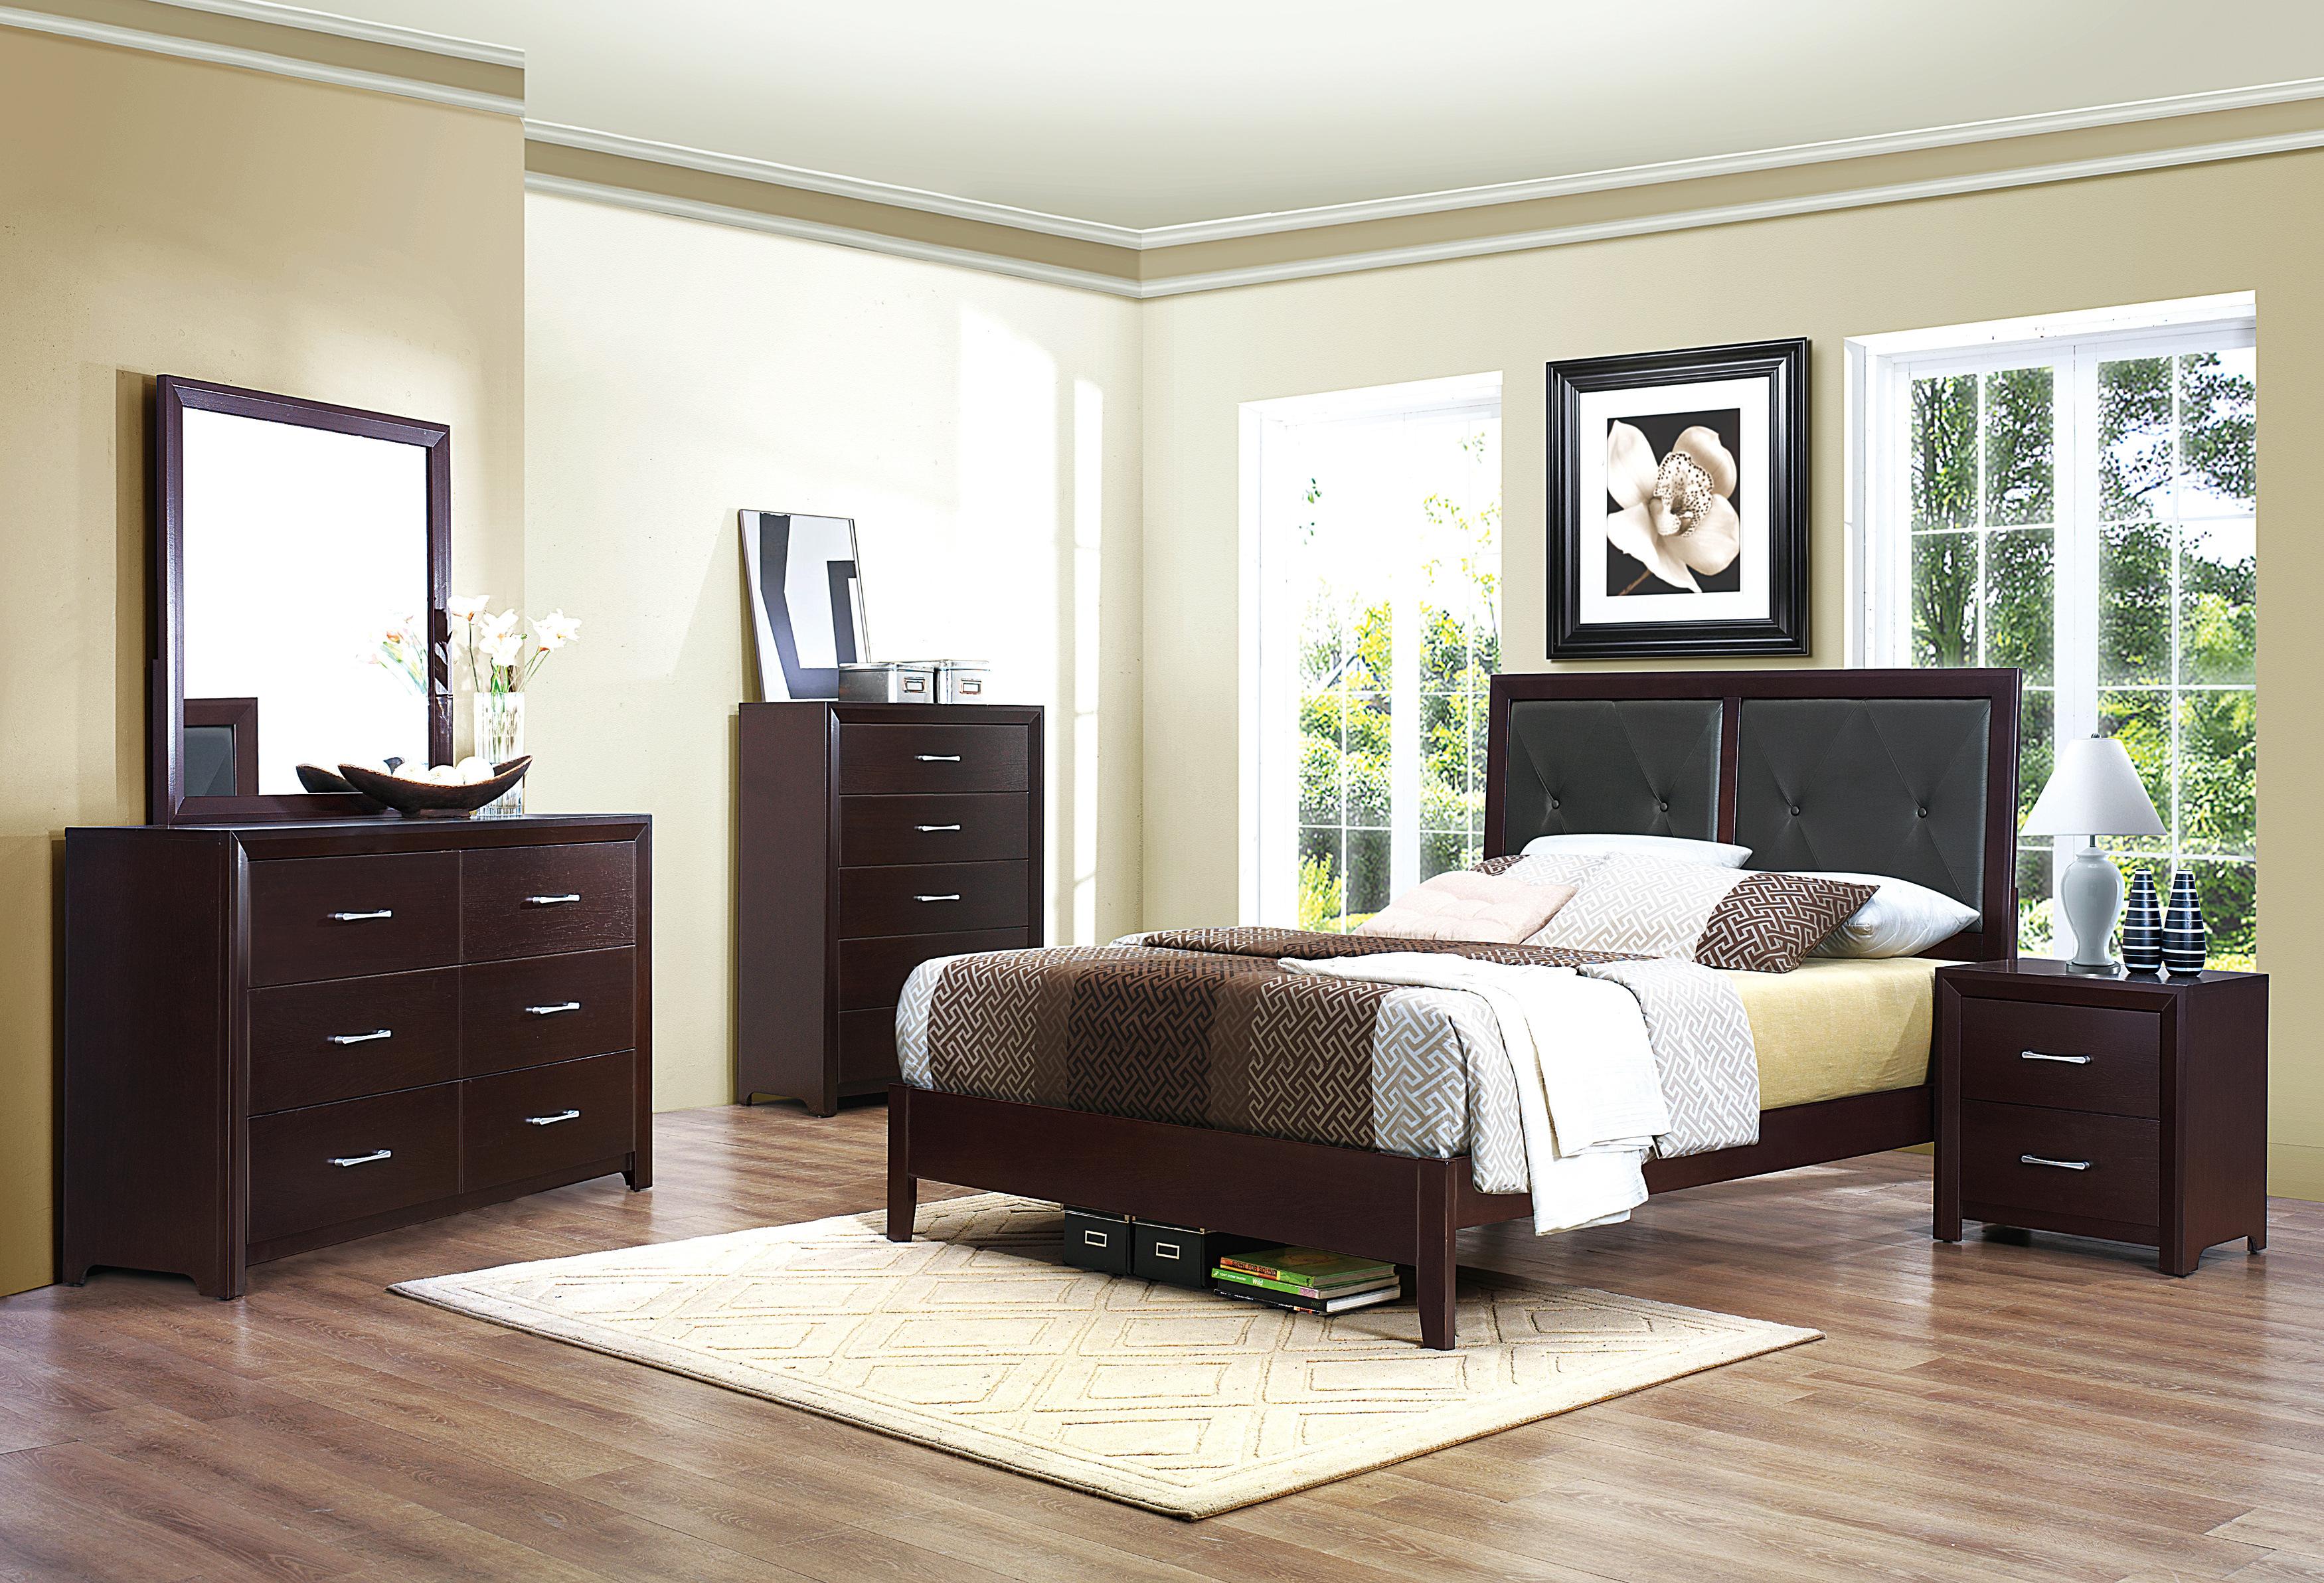 

    
Contemporary Espresso Wood CAL Bedroom Set 5pcs Homelegance 2145K-1CK* Edina
